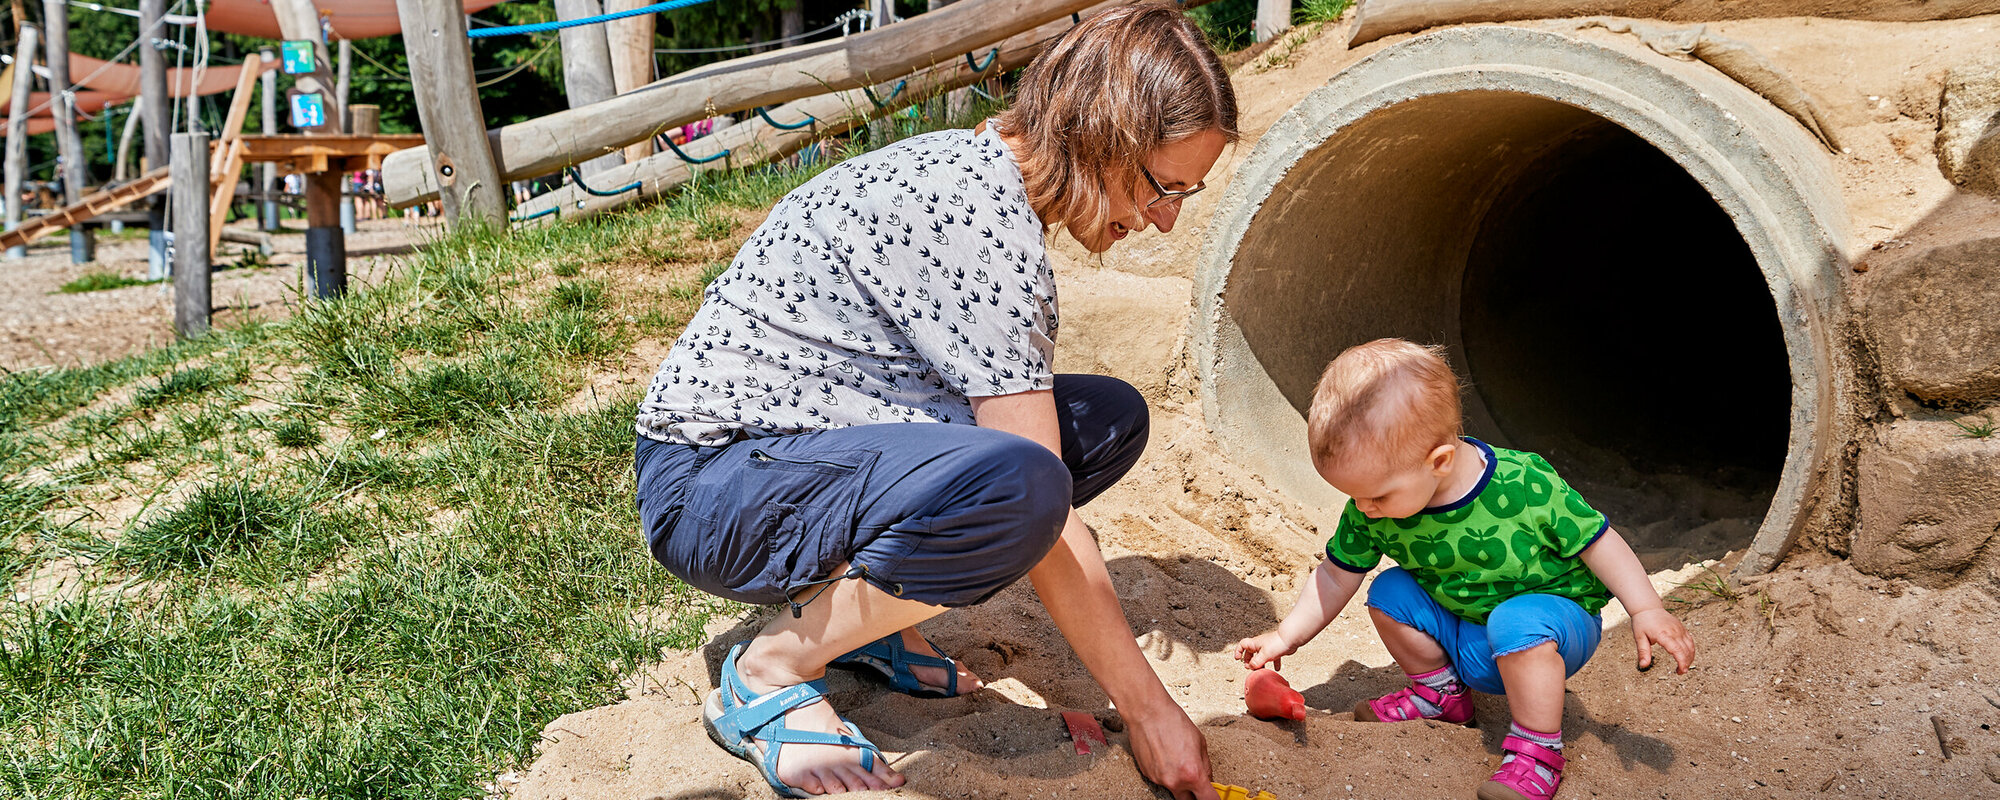 Ein Kind sitzt an einem Spielplatz vor einer Röhre und spielt im Sand. Die Mutter kniet neben dem Kind.